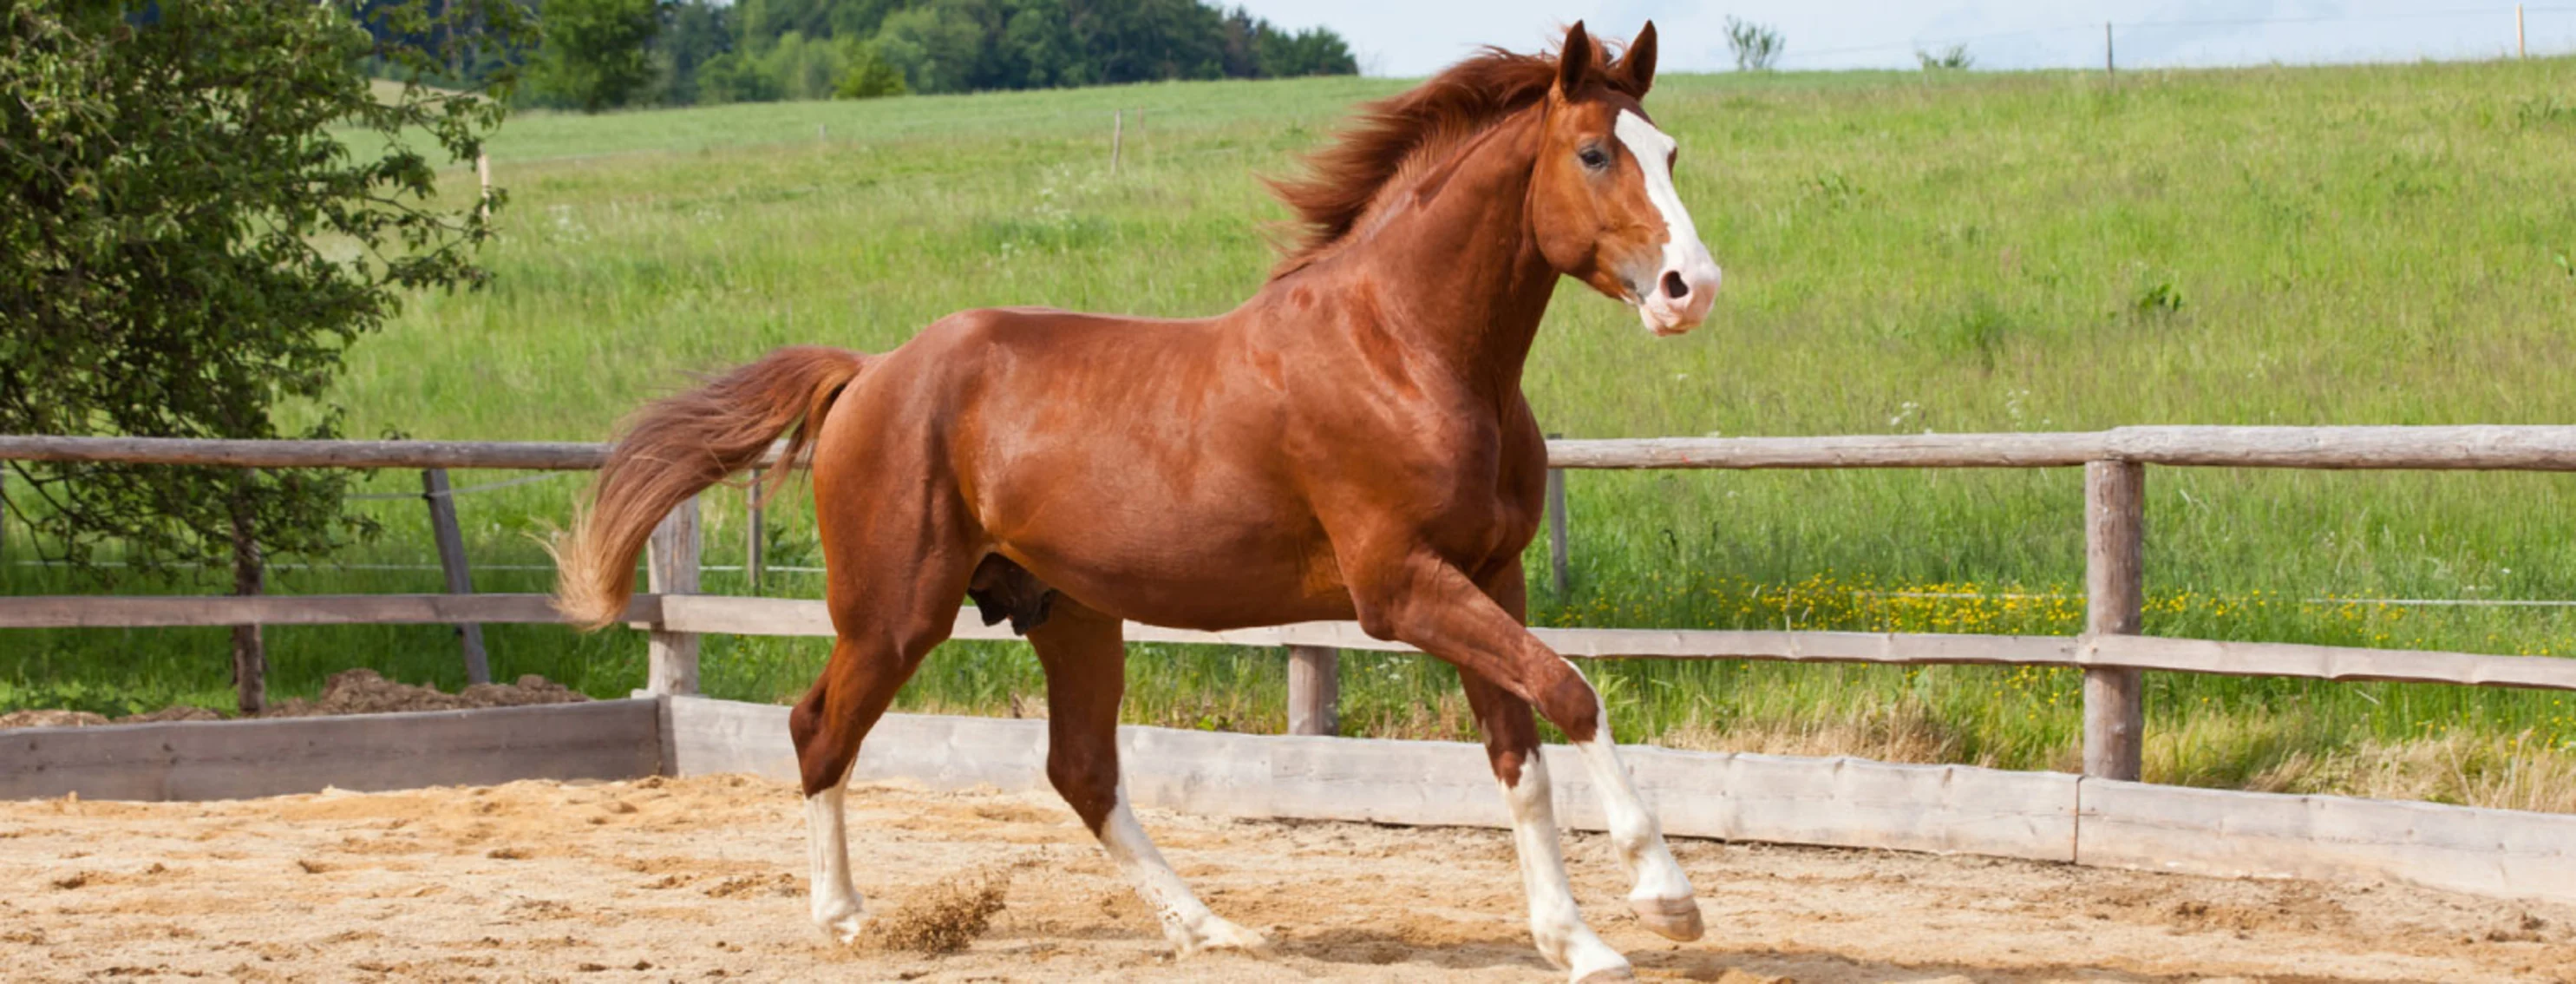 Brown horse standing in pen